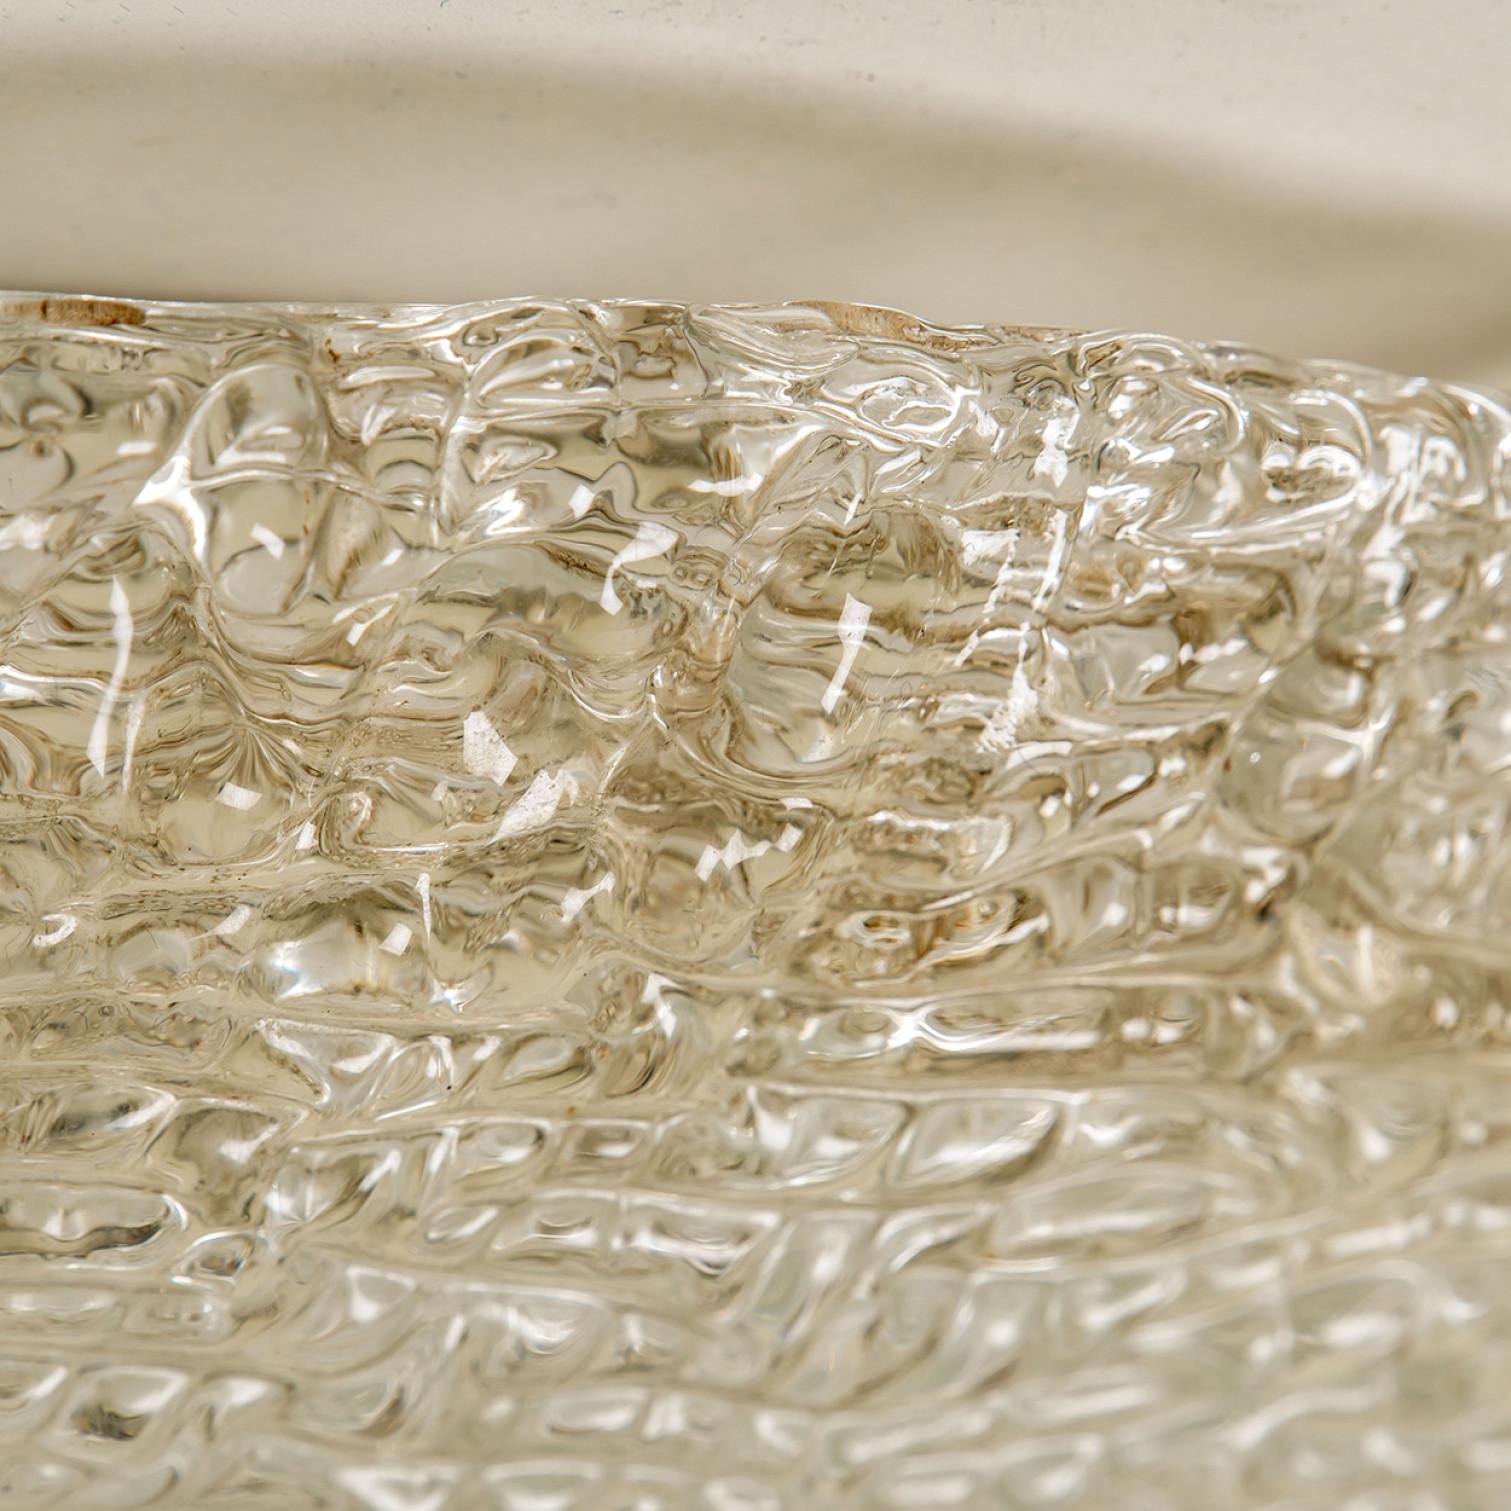 Hochwertiges, modernes, dickes, strukturiertes Eisglas für die Unterputzmontage. Hergestellt von der Firma Hillebrand, Deutschland, ca. 1965. Die Unterputzleuchte besticht durch eine große runde, handgefertigte Glasschale. Die Rückwand ist aus